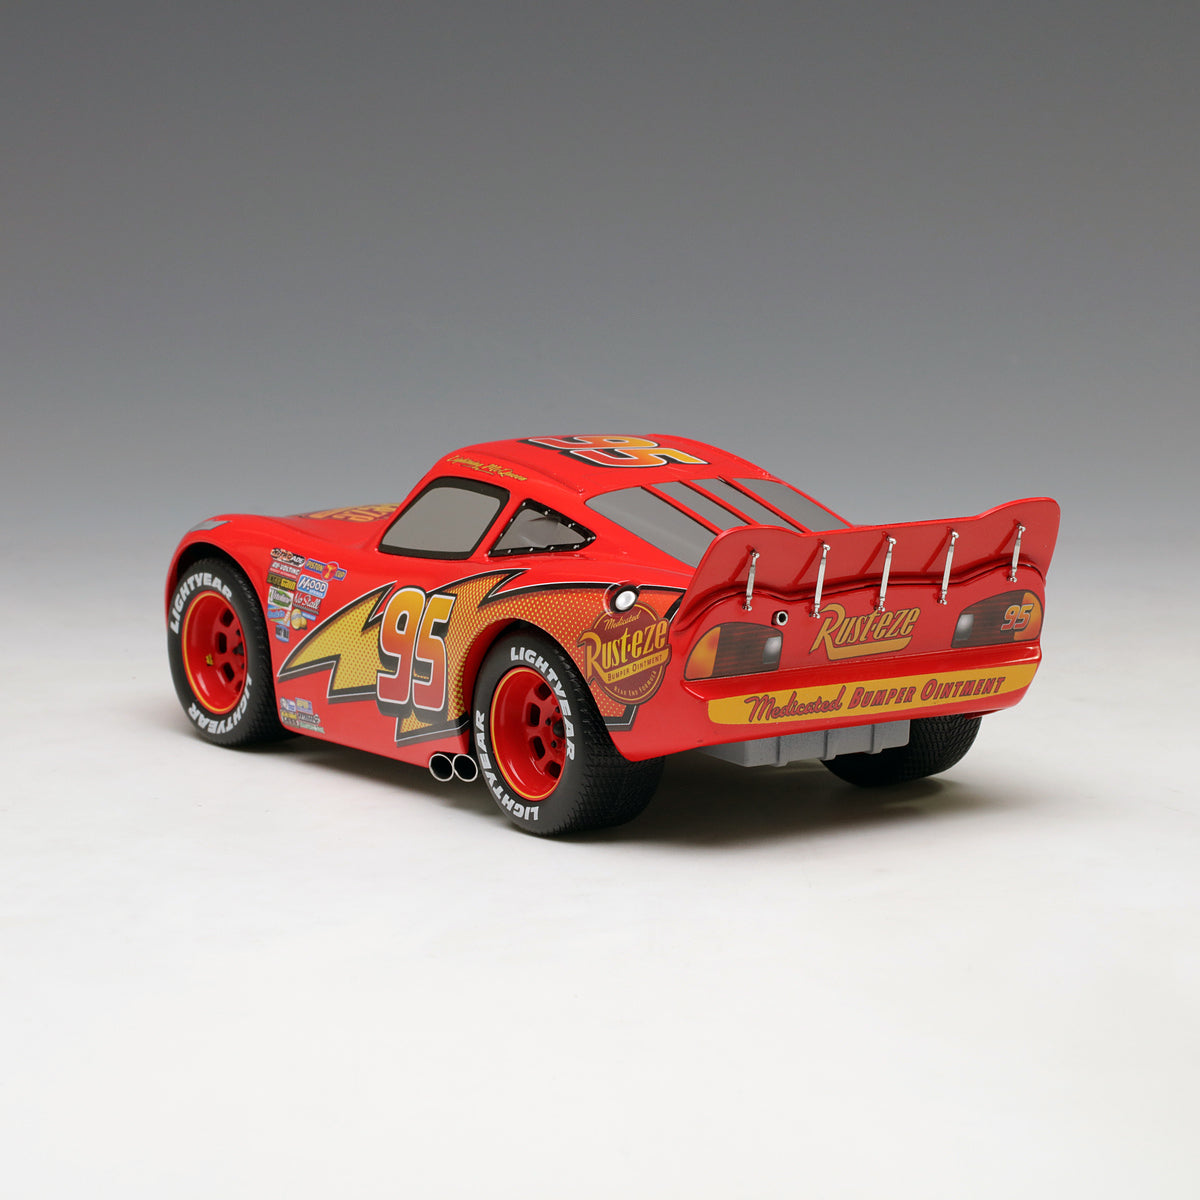 Schuco 1:18 Disney Lightning McQueen Movie Car With Showcase 450036000